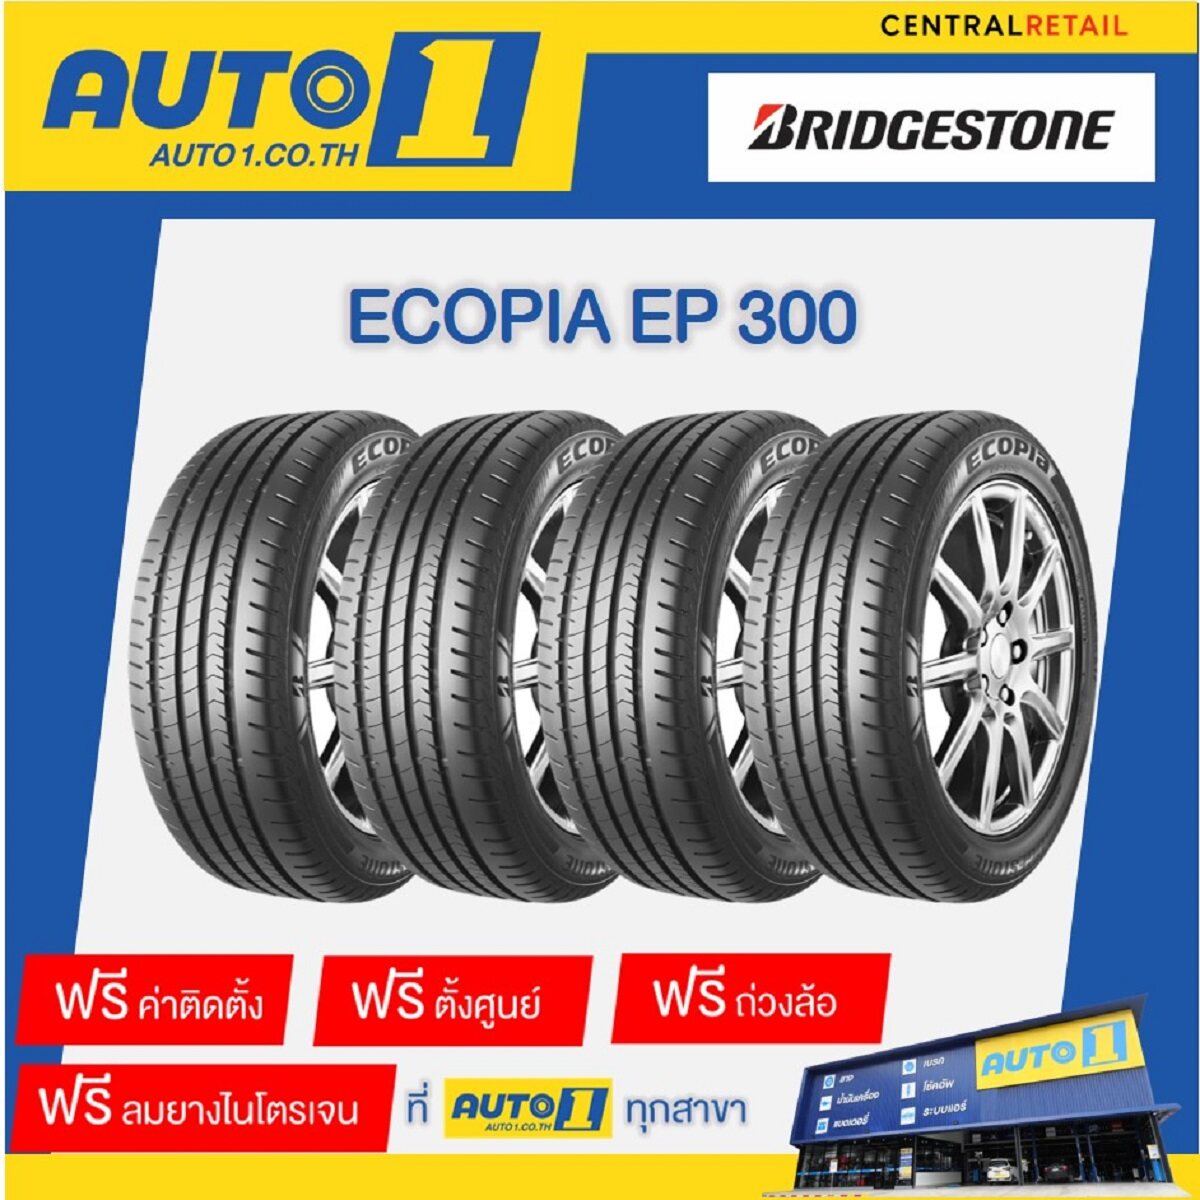 ยางรถยนต์ 215/50R17 Bridgestone Ecopia EP300 บริดจสโตน (รถเก๋ง ขอบ17  จำนวน 4 เส้น พร้อมติดตั้งยางที่ศูนย์บริการออโต้วัน)